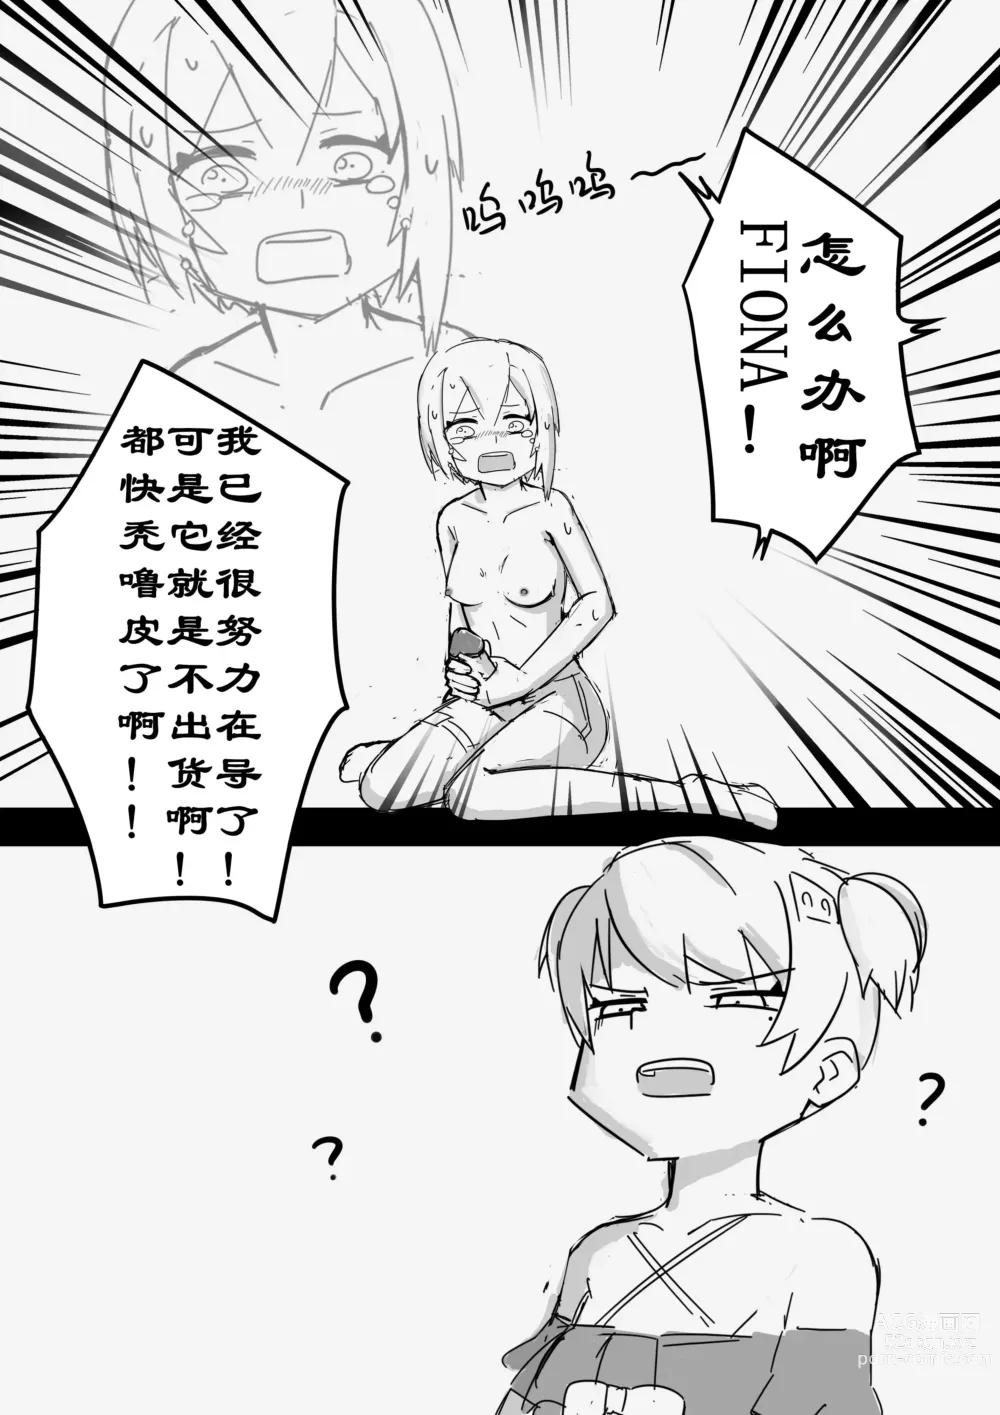 Page 5 of manga 震惊！底边小v霏豆儿竟因为GN营业发生此事！背后的原因令人沉思